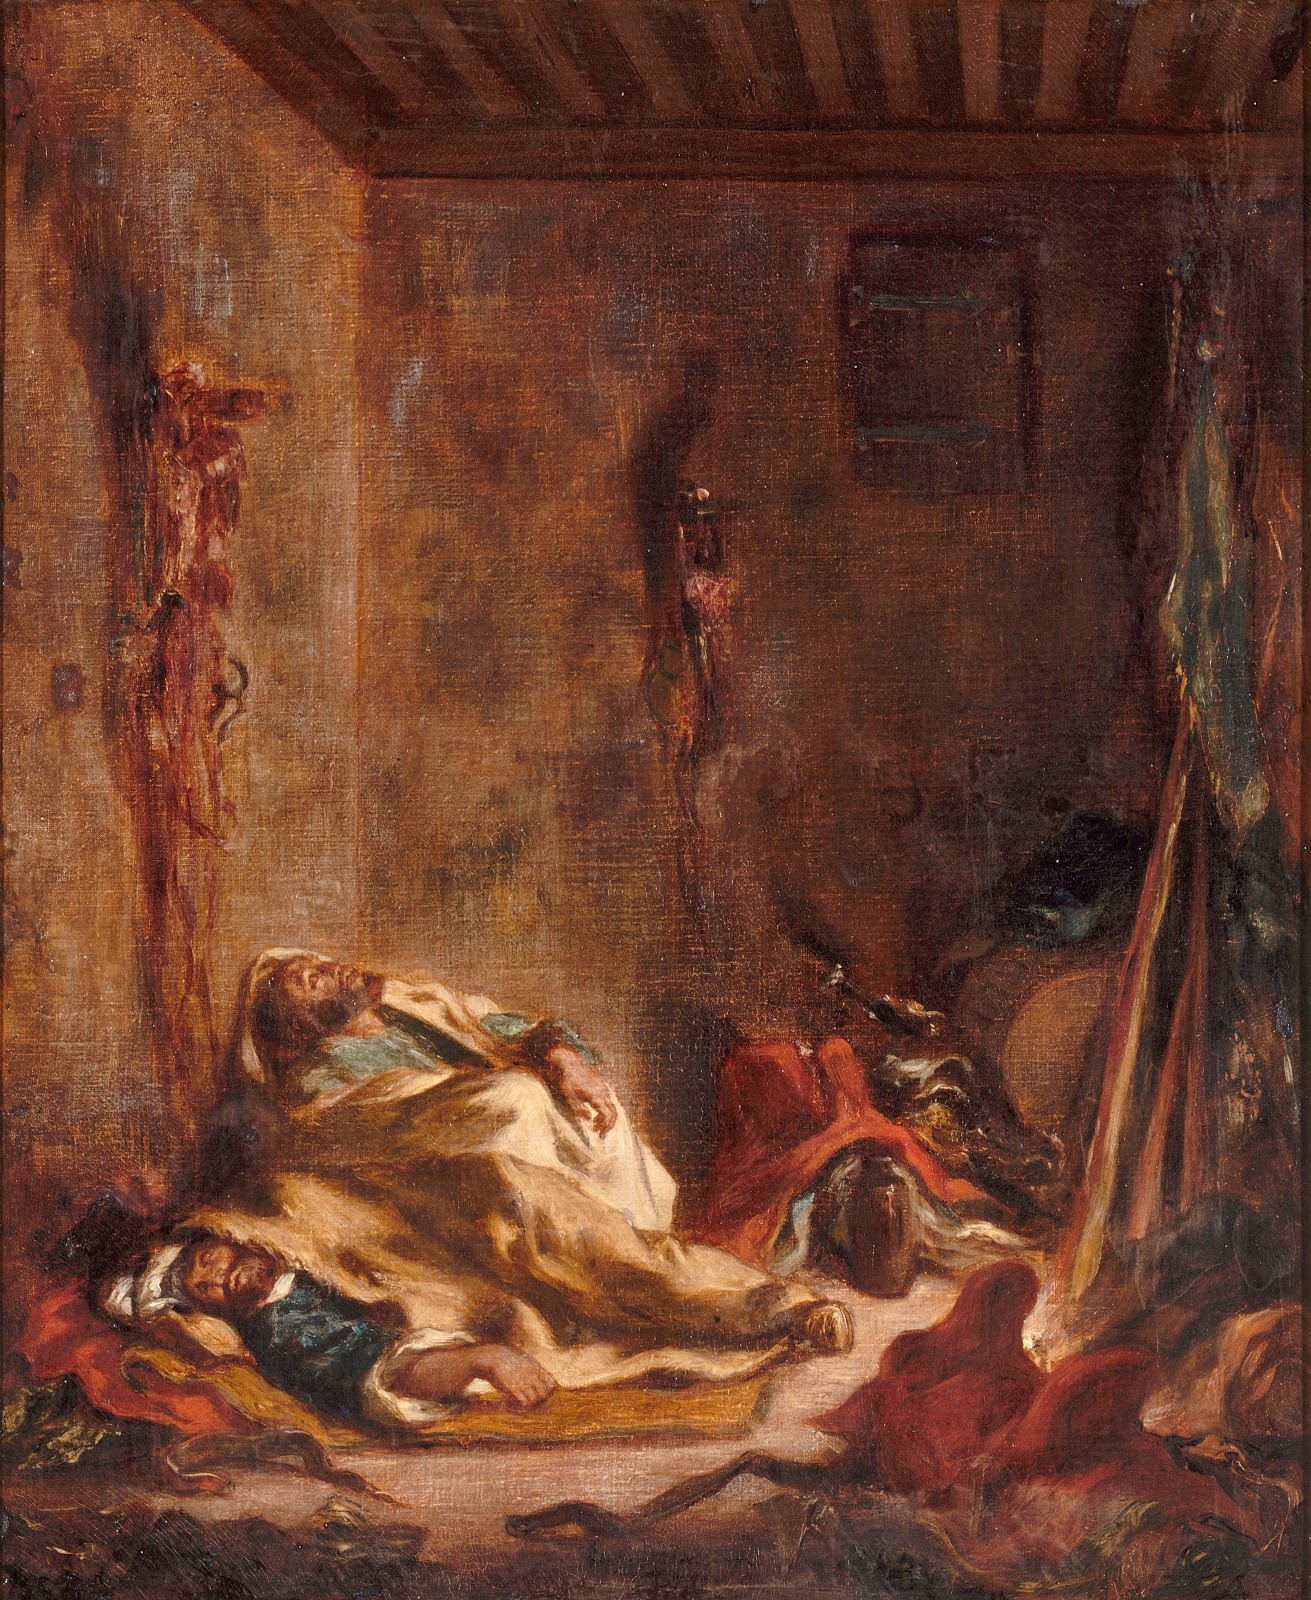 Eugene+Delacroix-1798-1863 (114).jpg